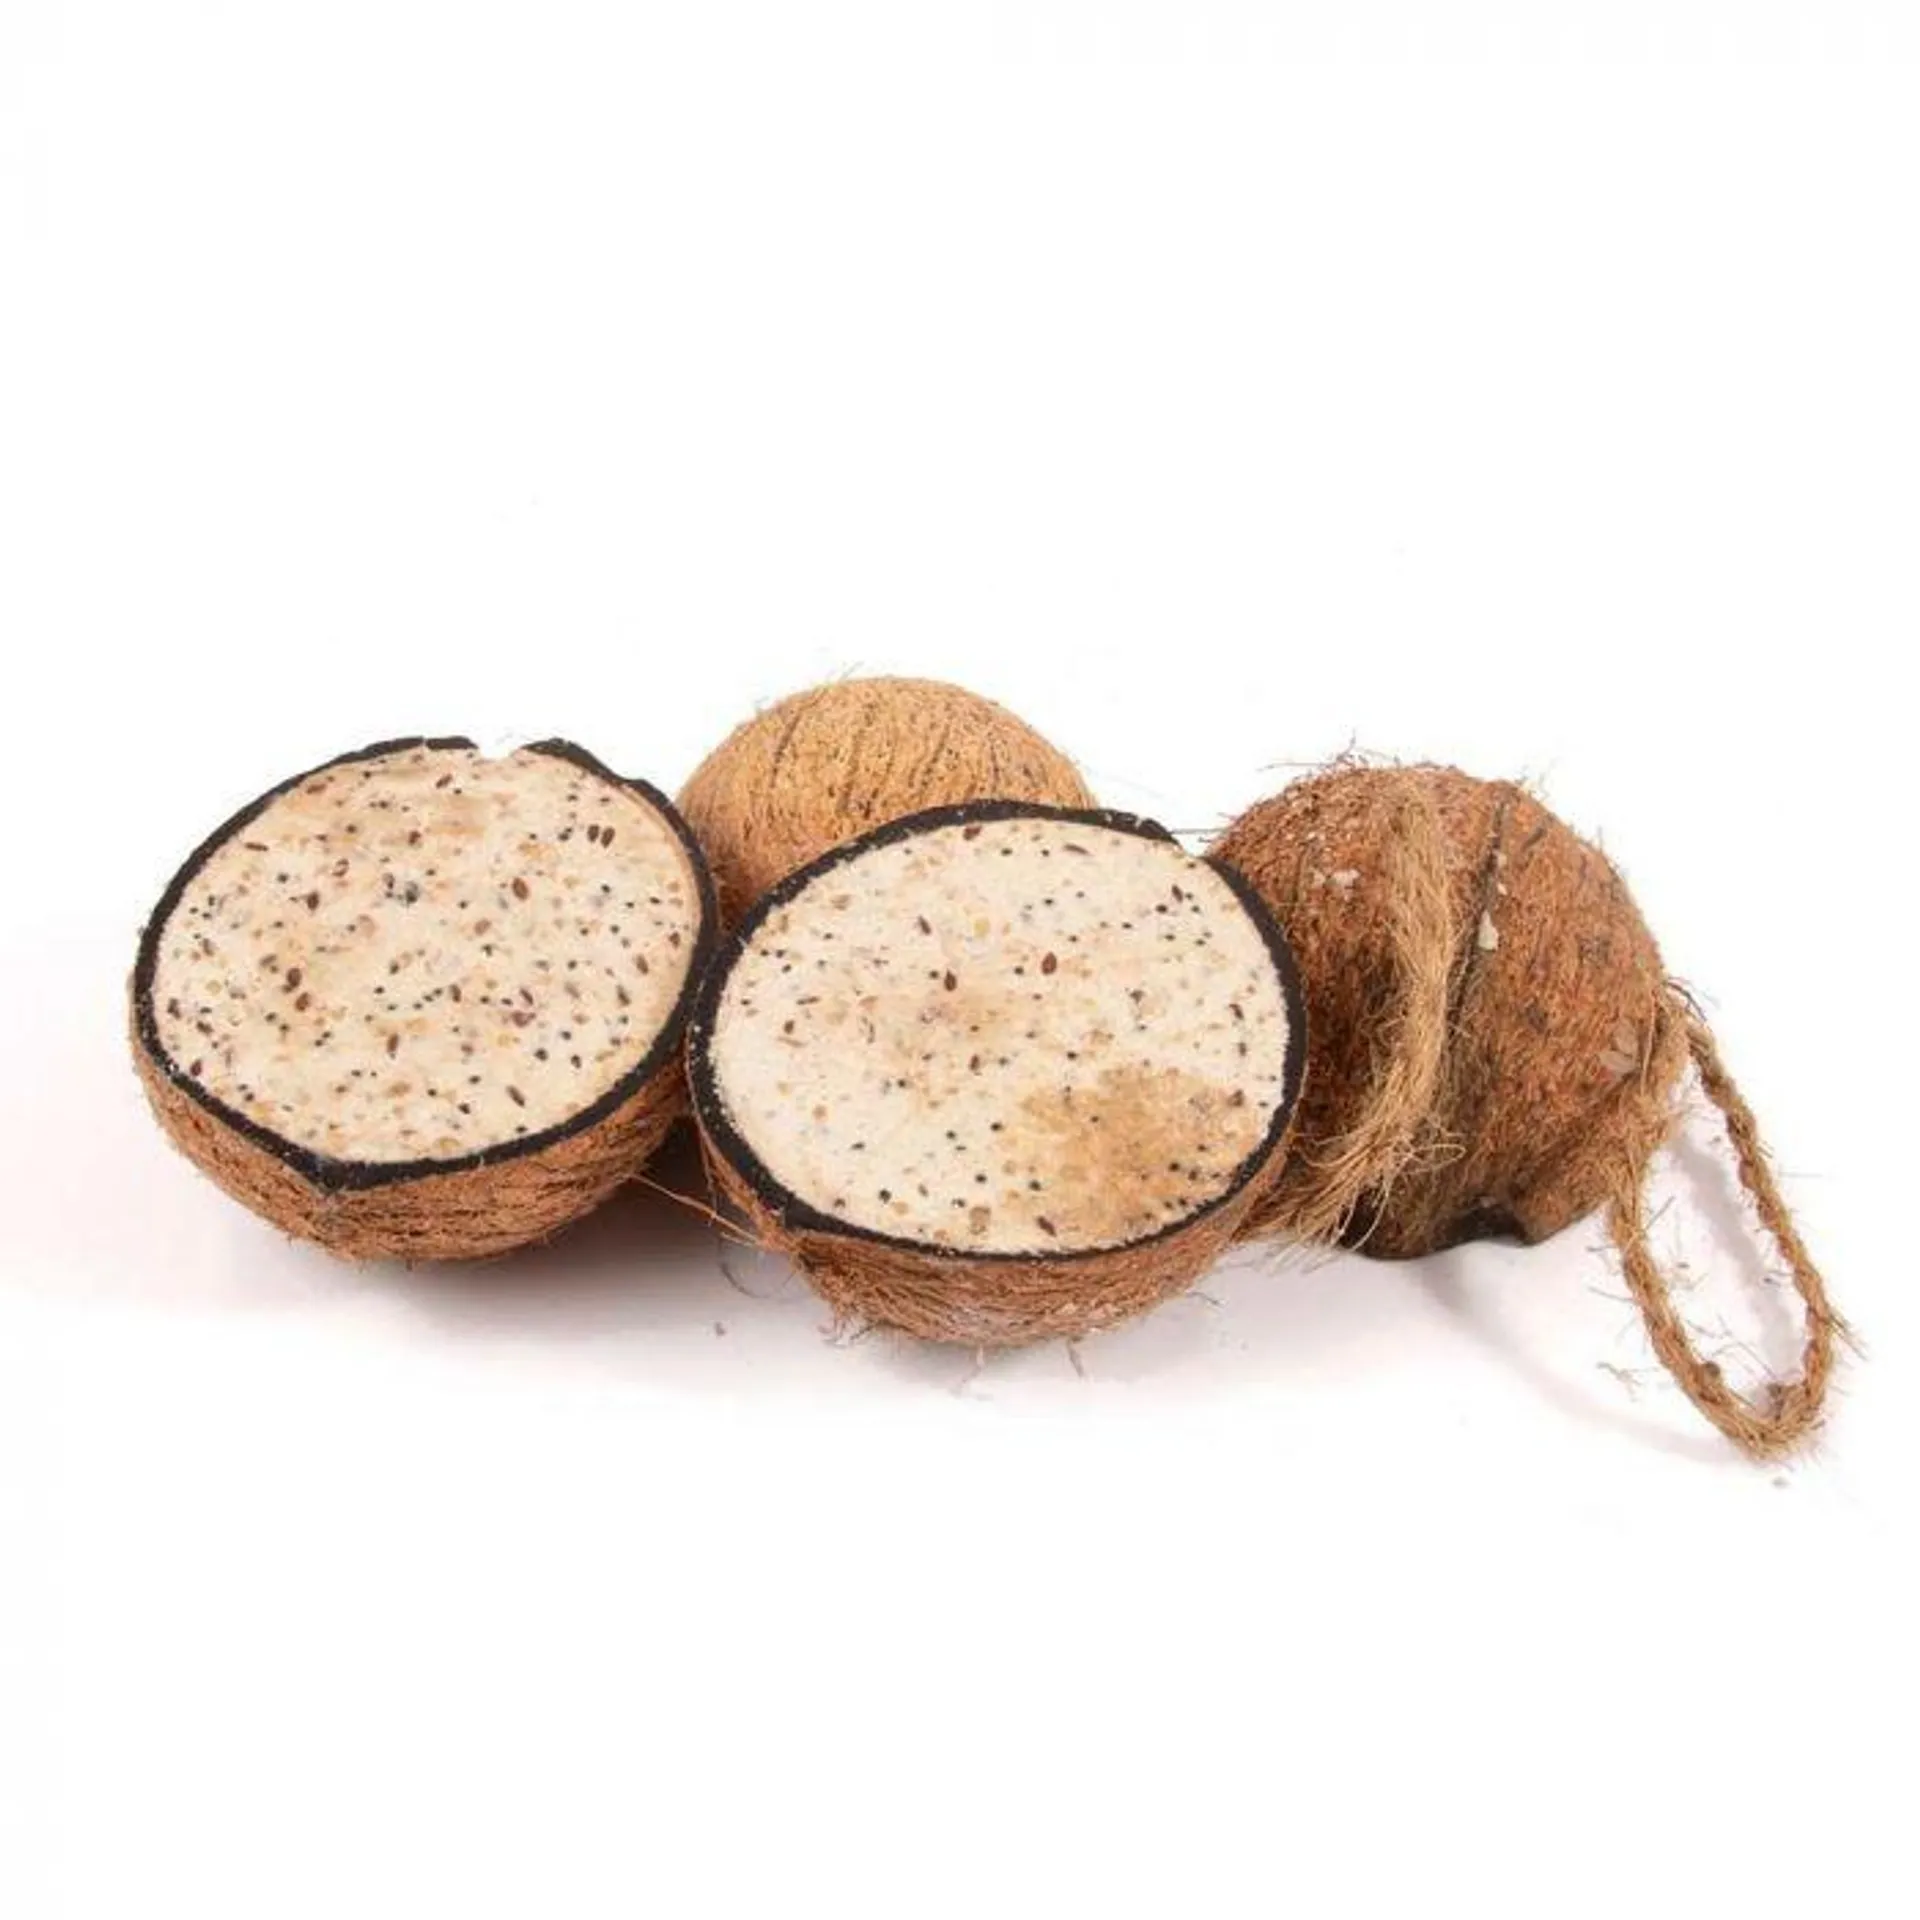 4 halve kokosnoten met meelwormen